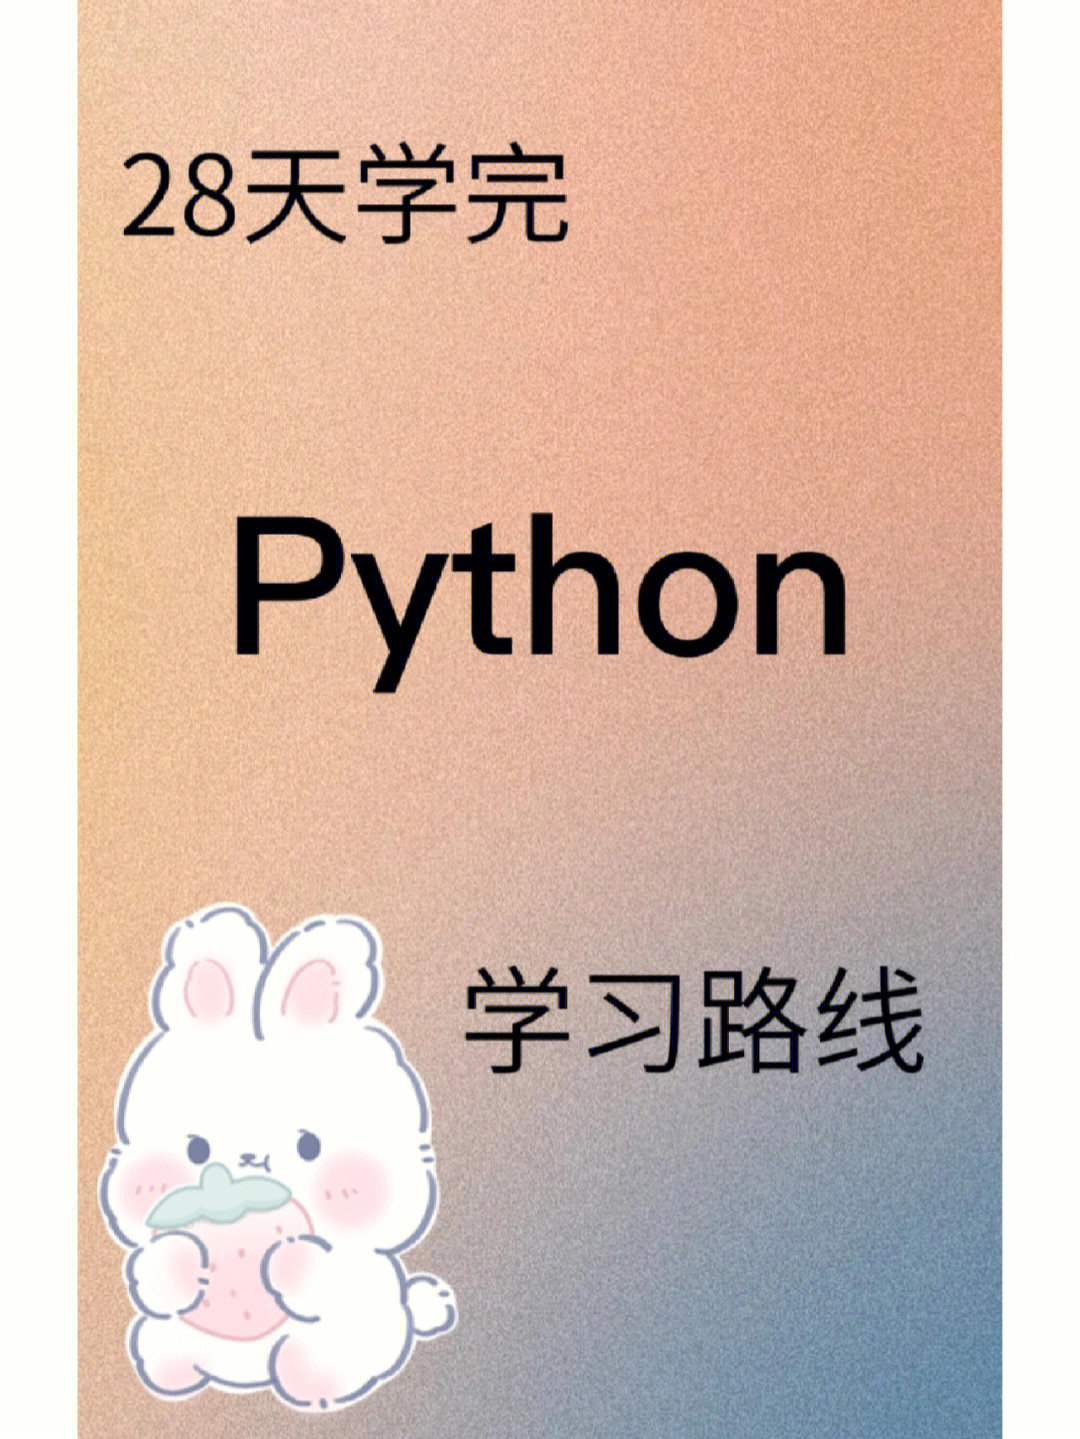 python手机壁纸图片